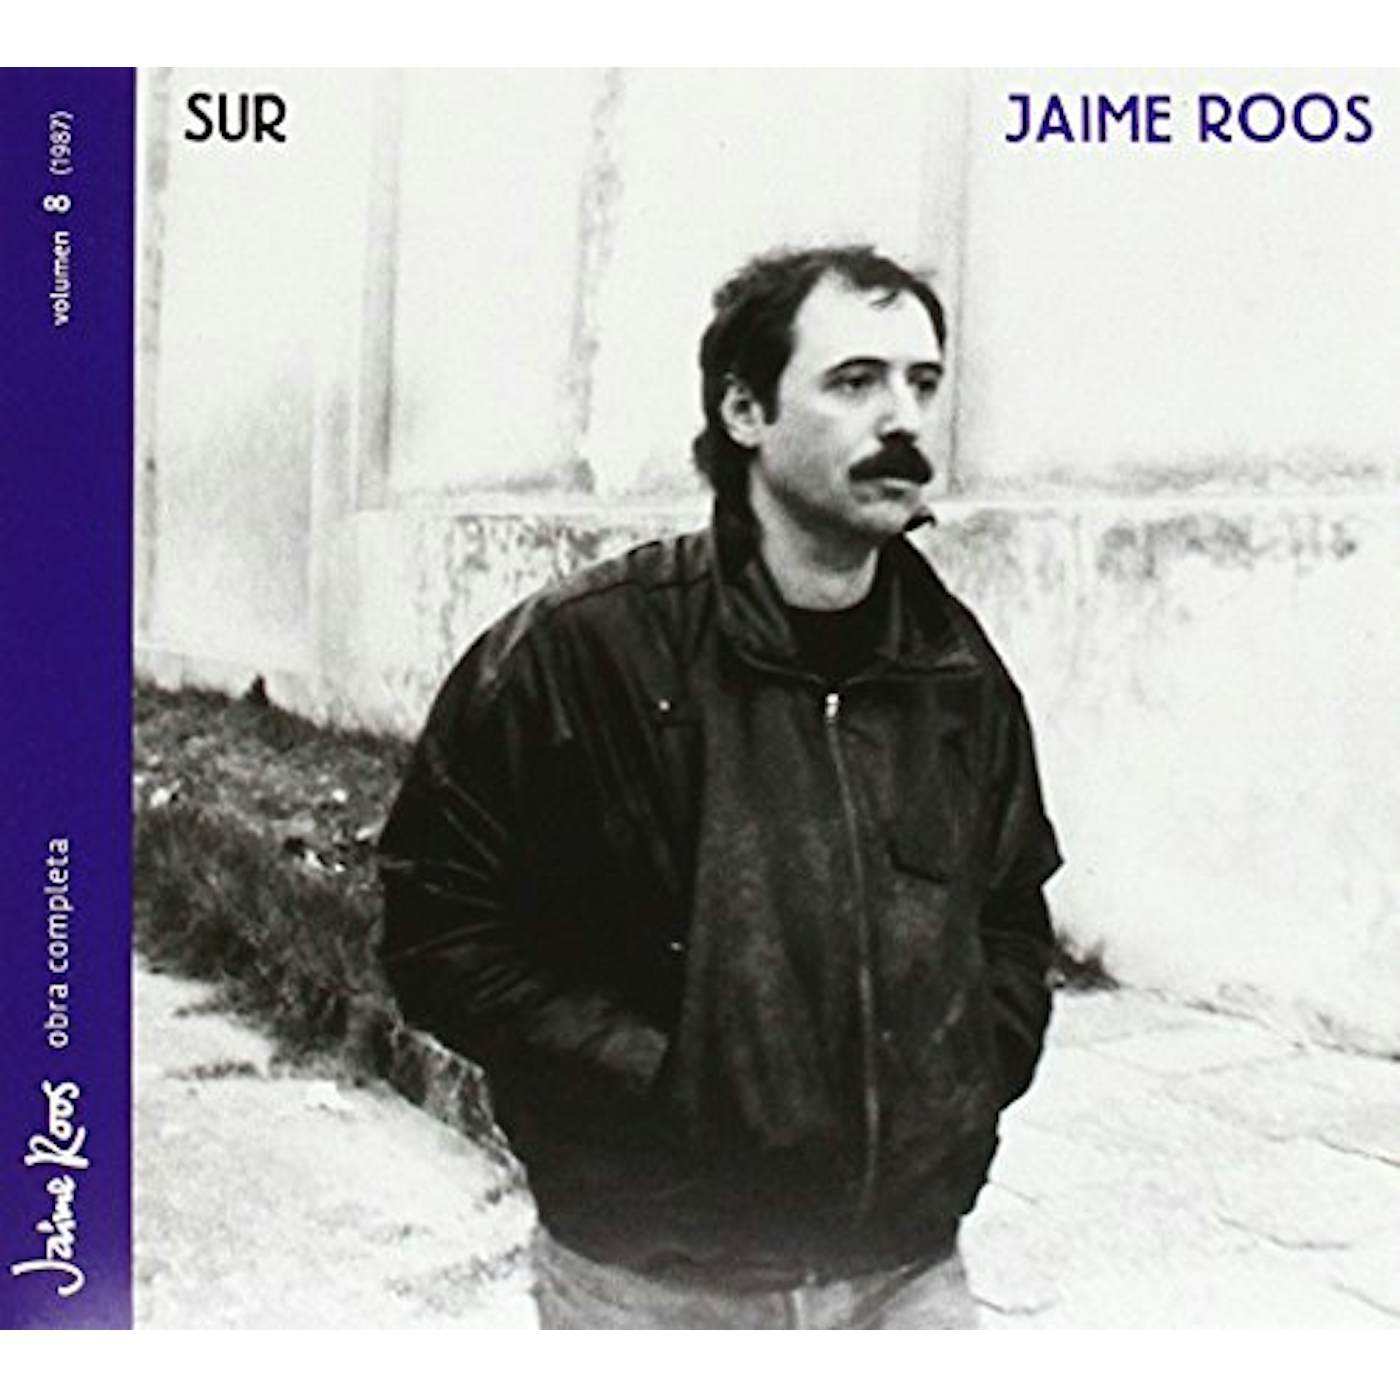 Jaime Roos SUR CD